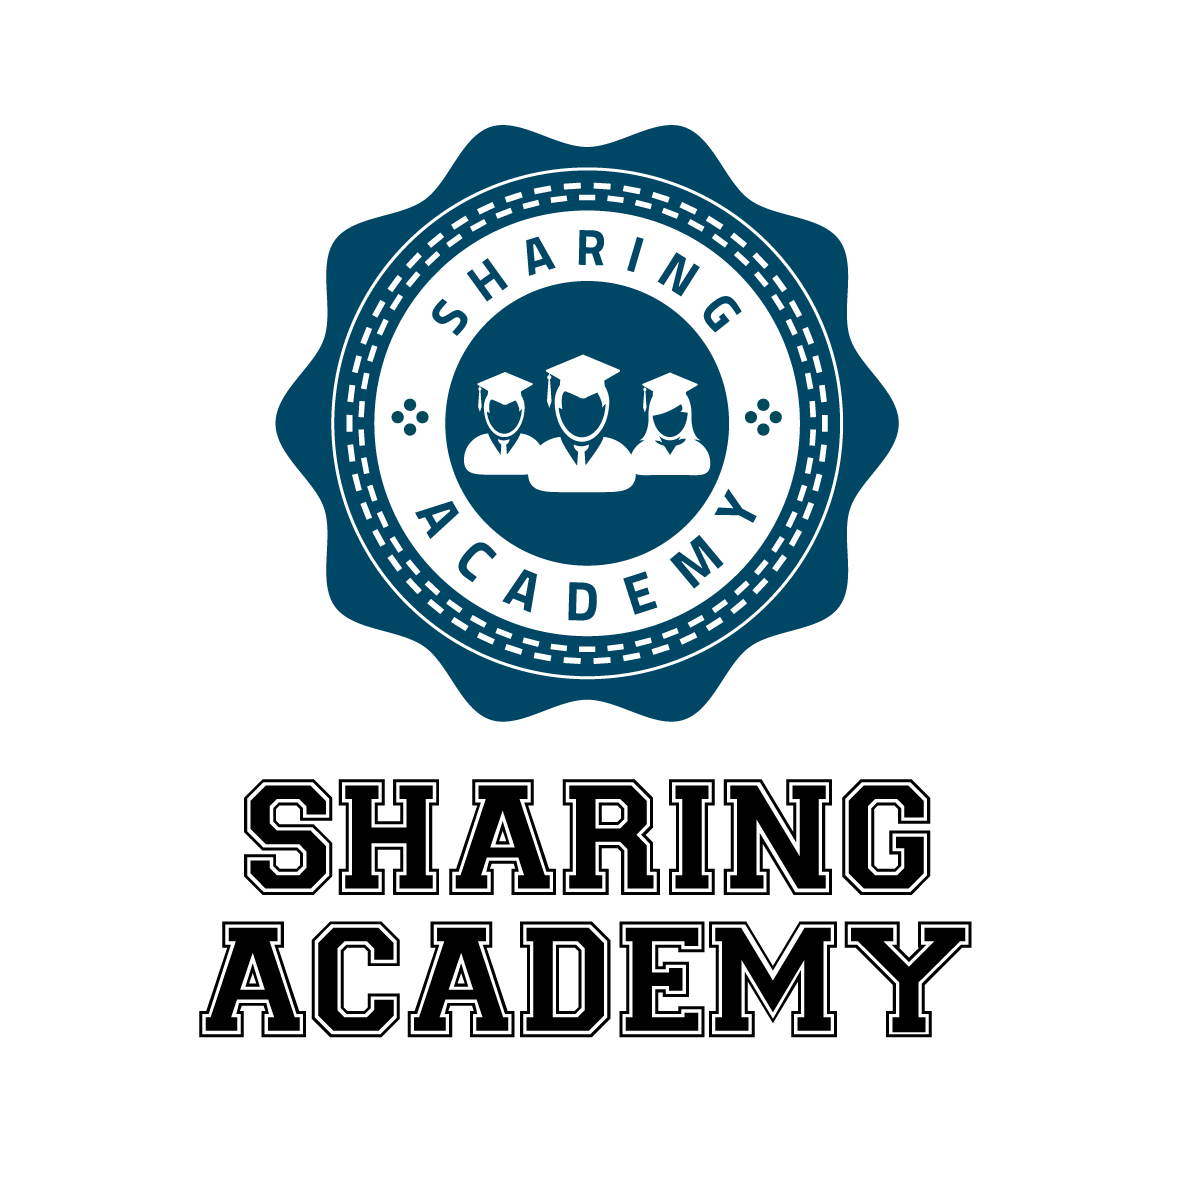 L’app en català Sharing Academy, premiada com la millor aplicació als Mobile Premier Awards 2016